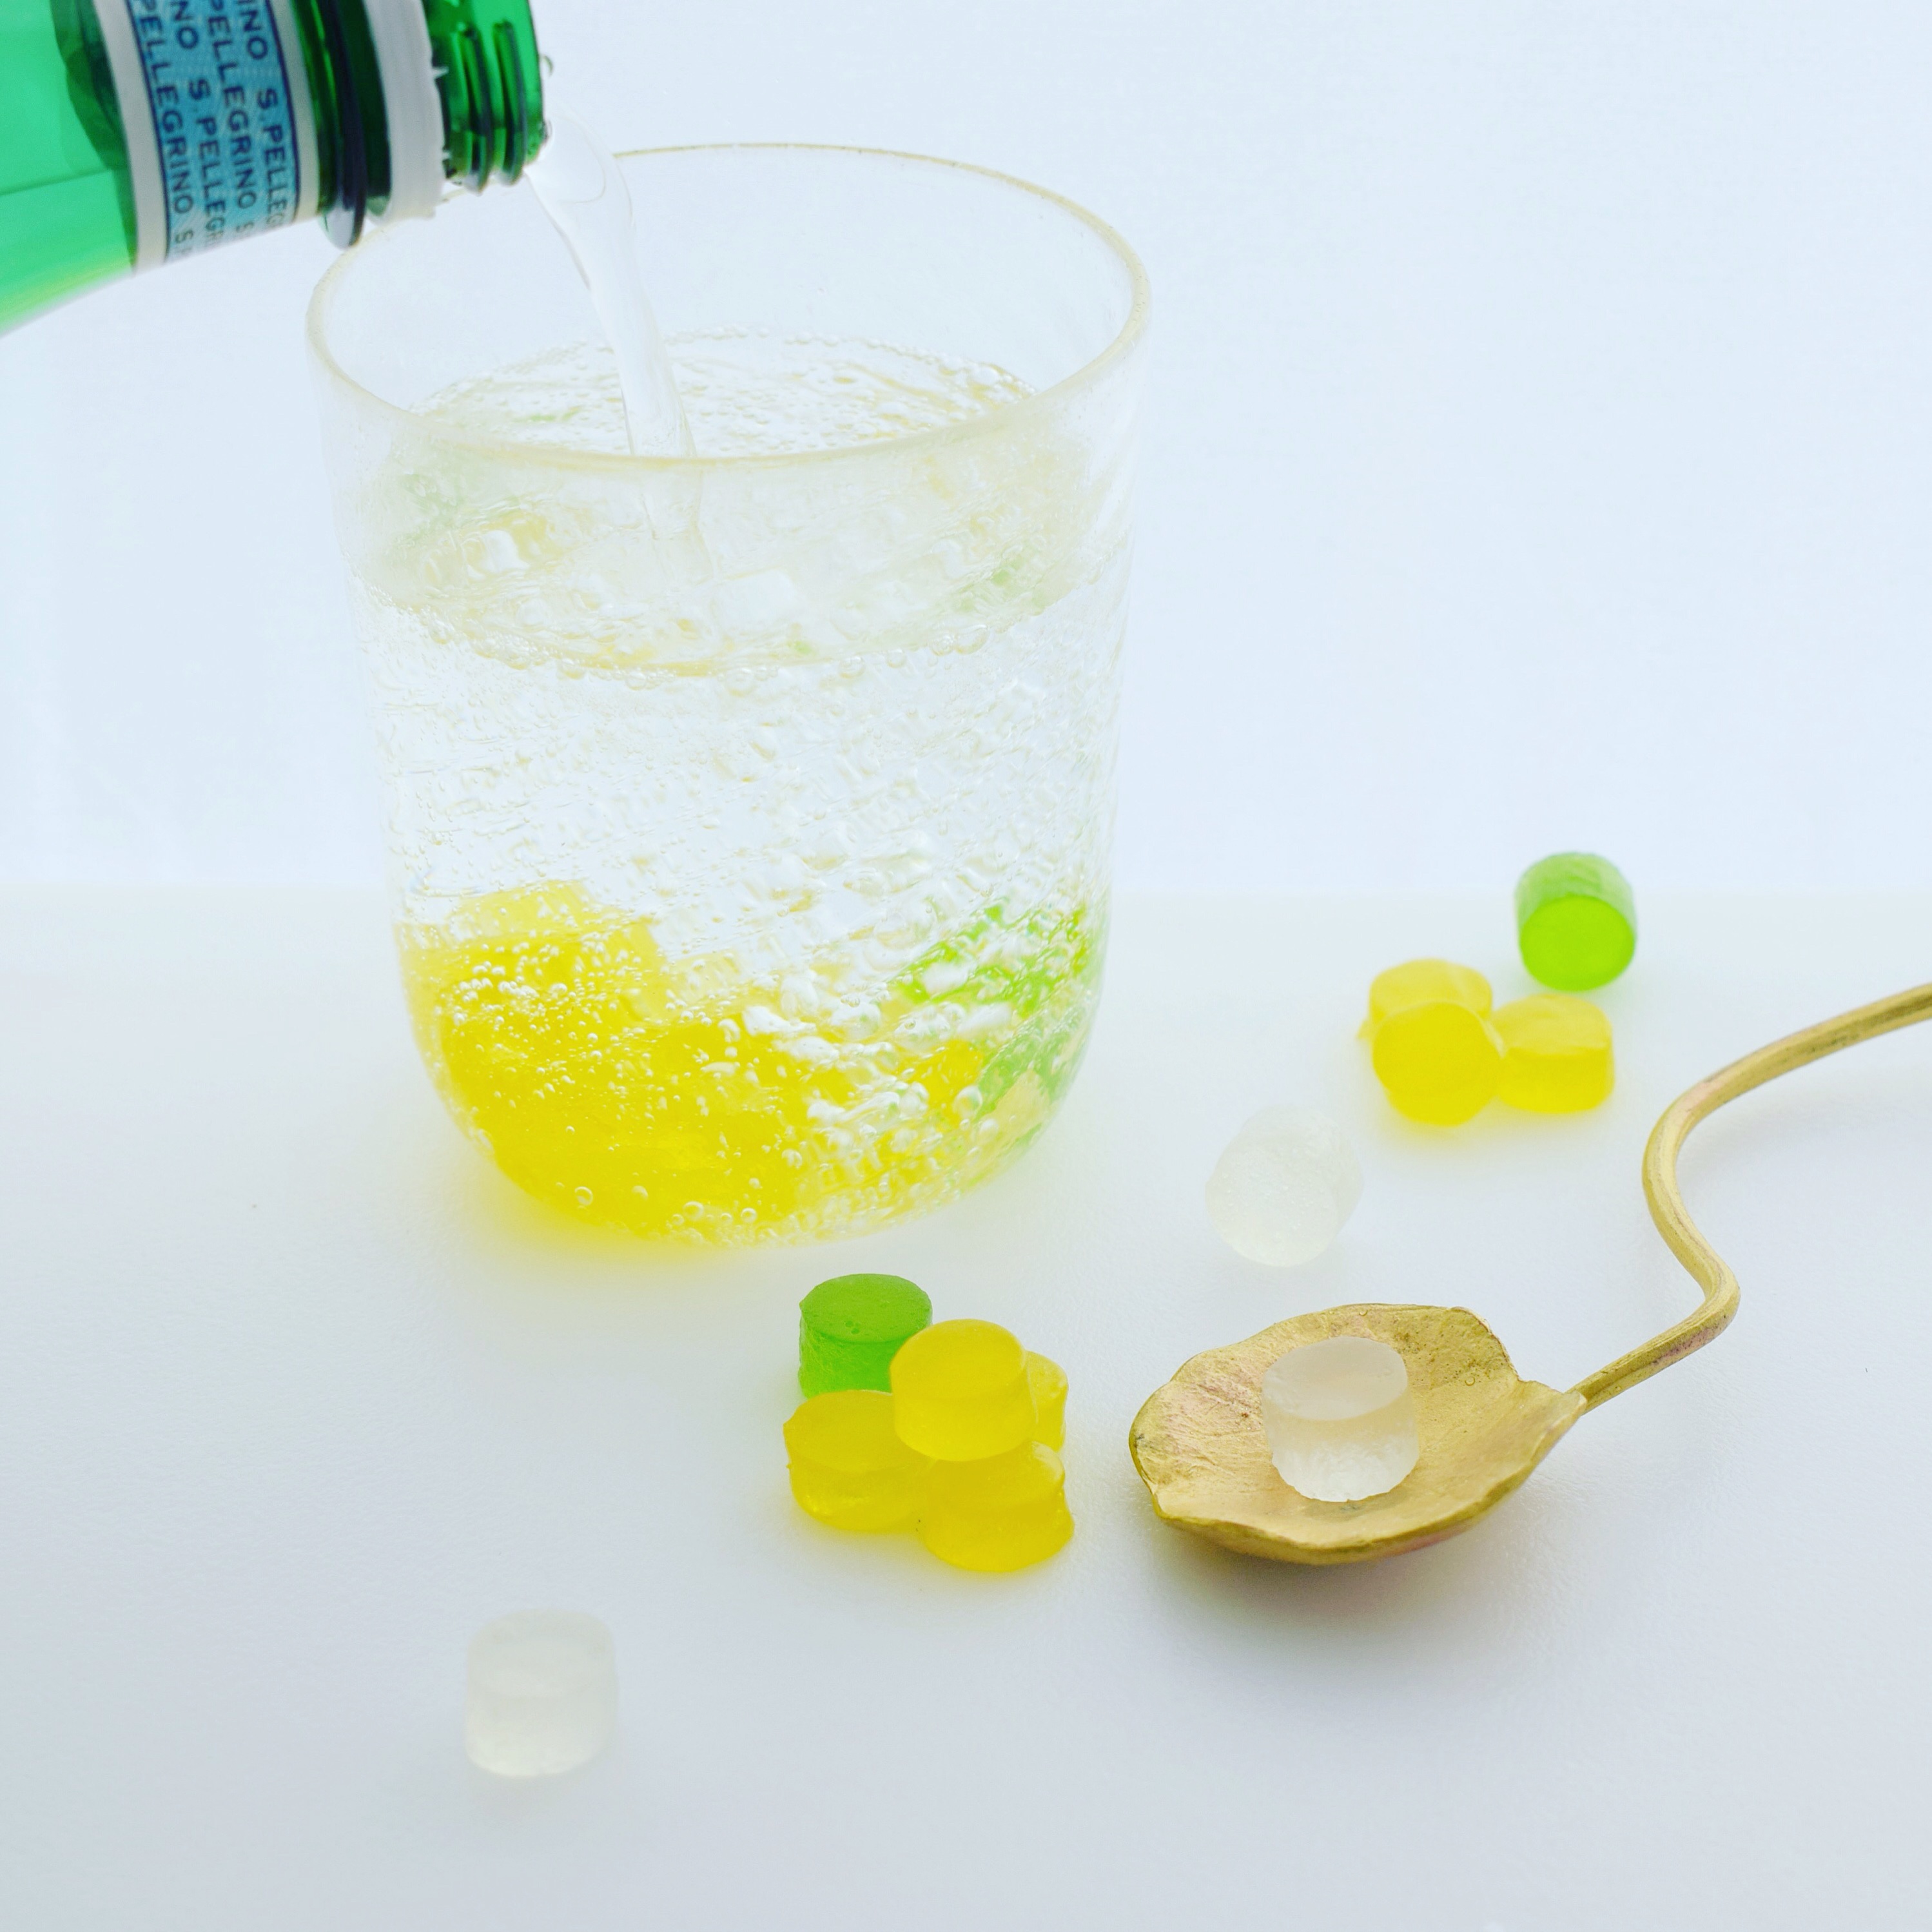 食べられる宝石 ミモザの琥珀糖 こはくとう 琥珀糖の作り方 レシピ アイディア Wagashi Studio